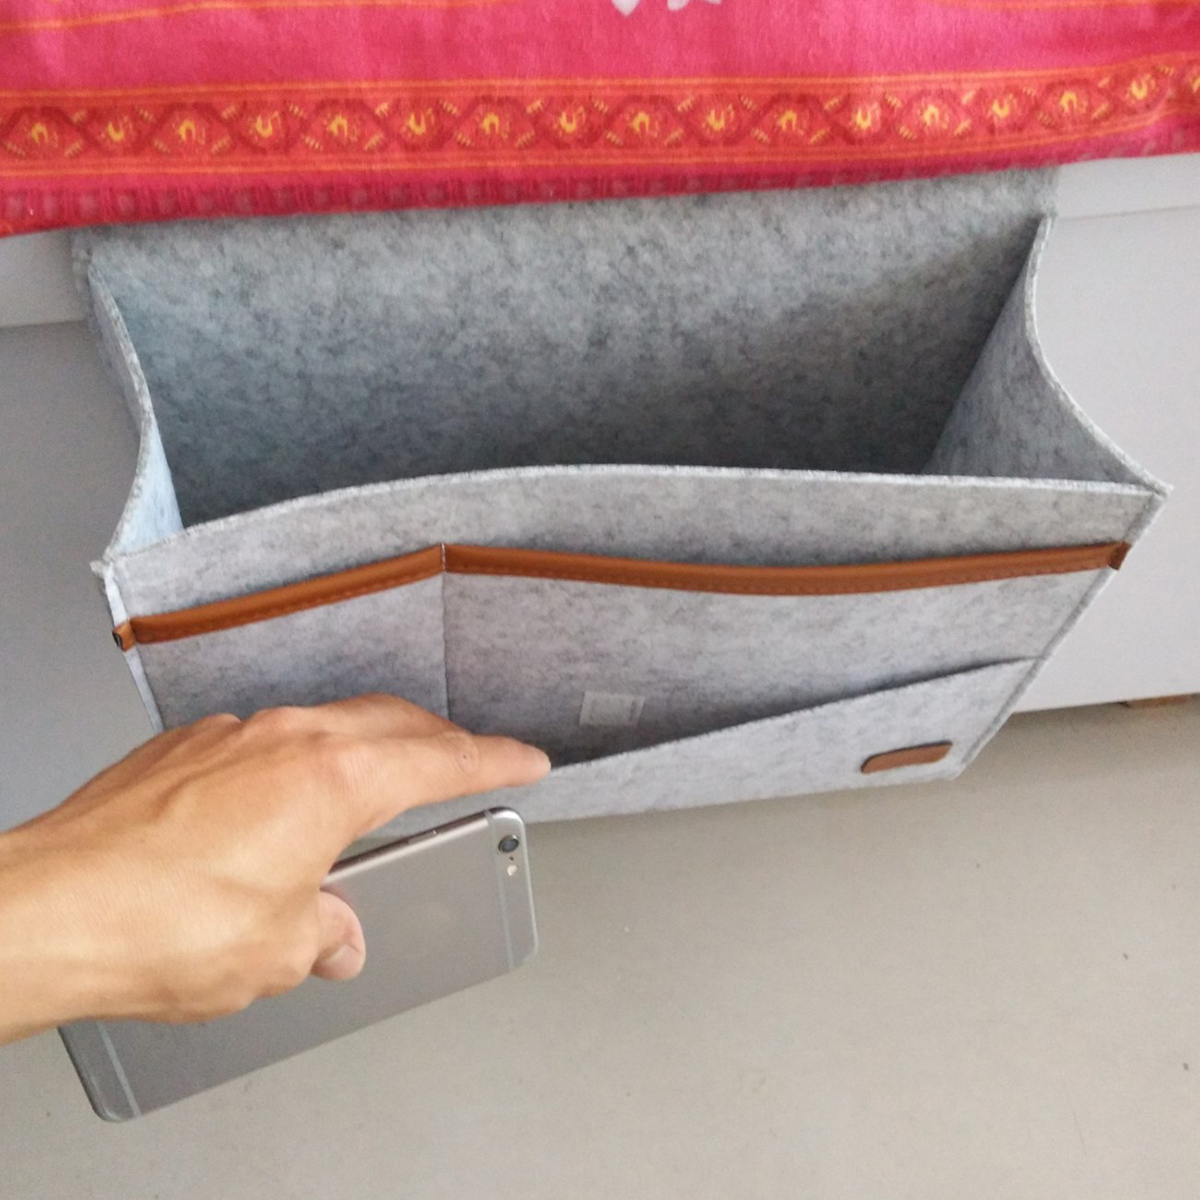 Bedside-Pocket-Storage-Baskets-Hanging-Bag-Felt-Sofa-Phone-Book-Organizer-Remote-Home-Holder-1360407-3